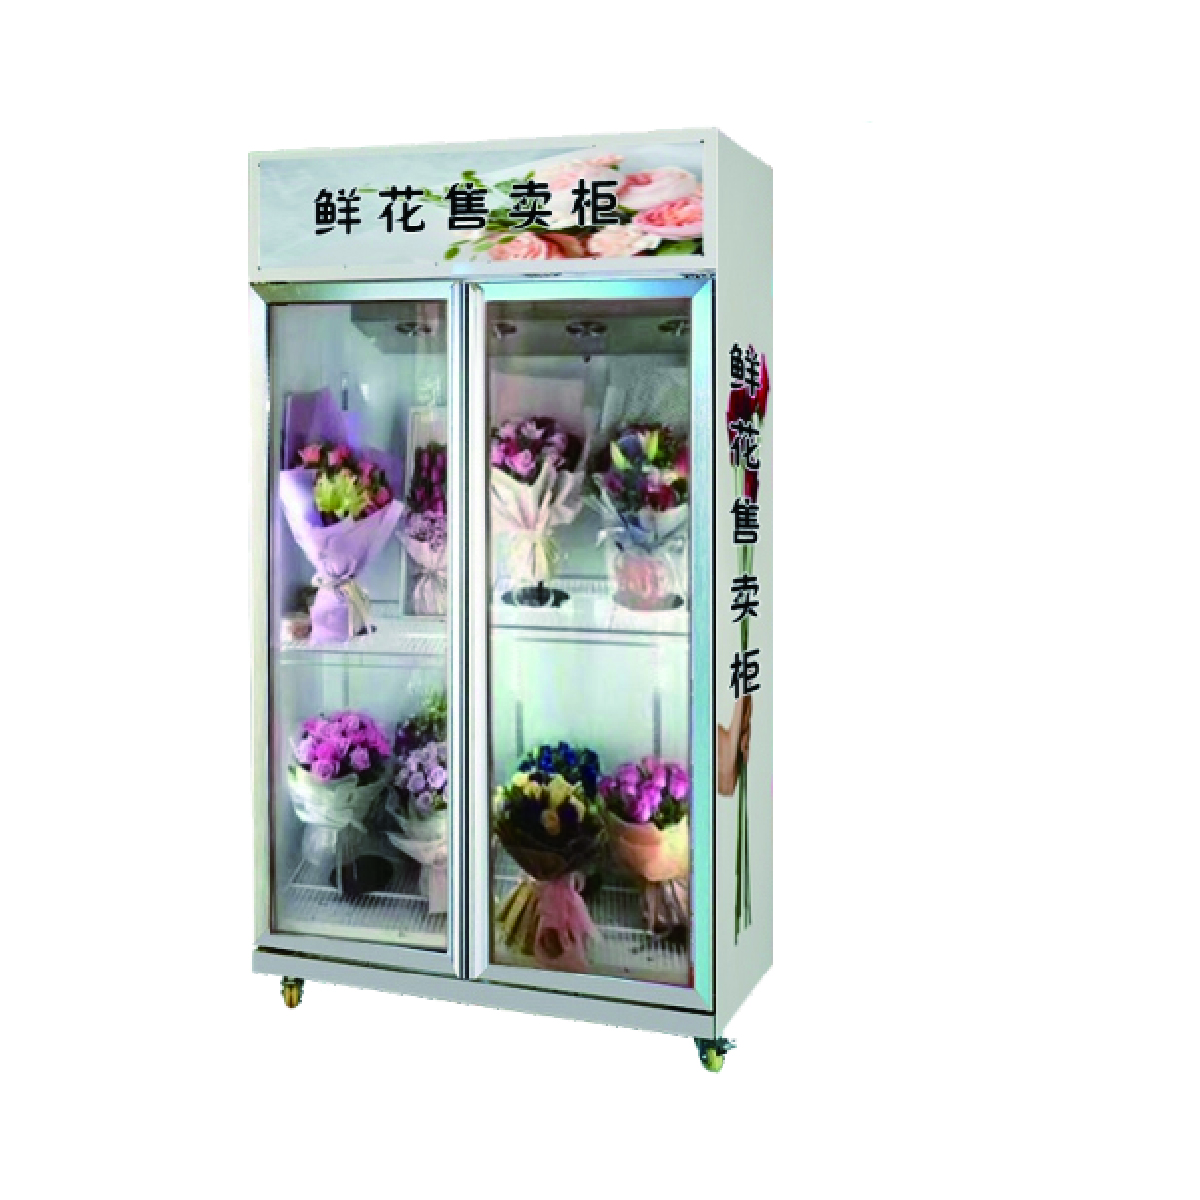 Flower vending machine ACFVM-B